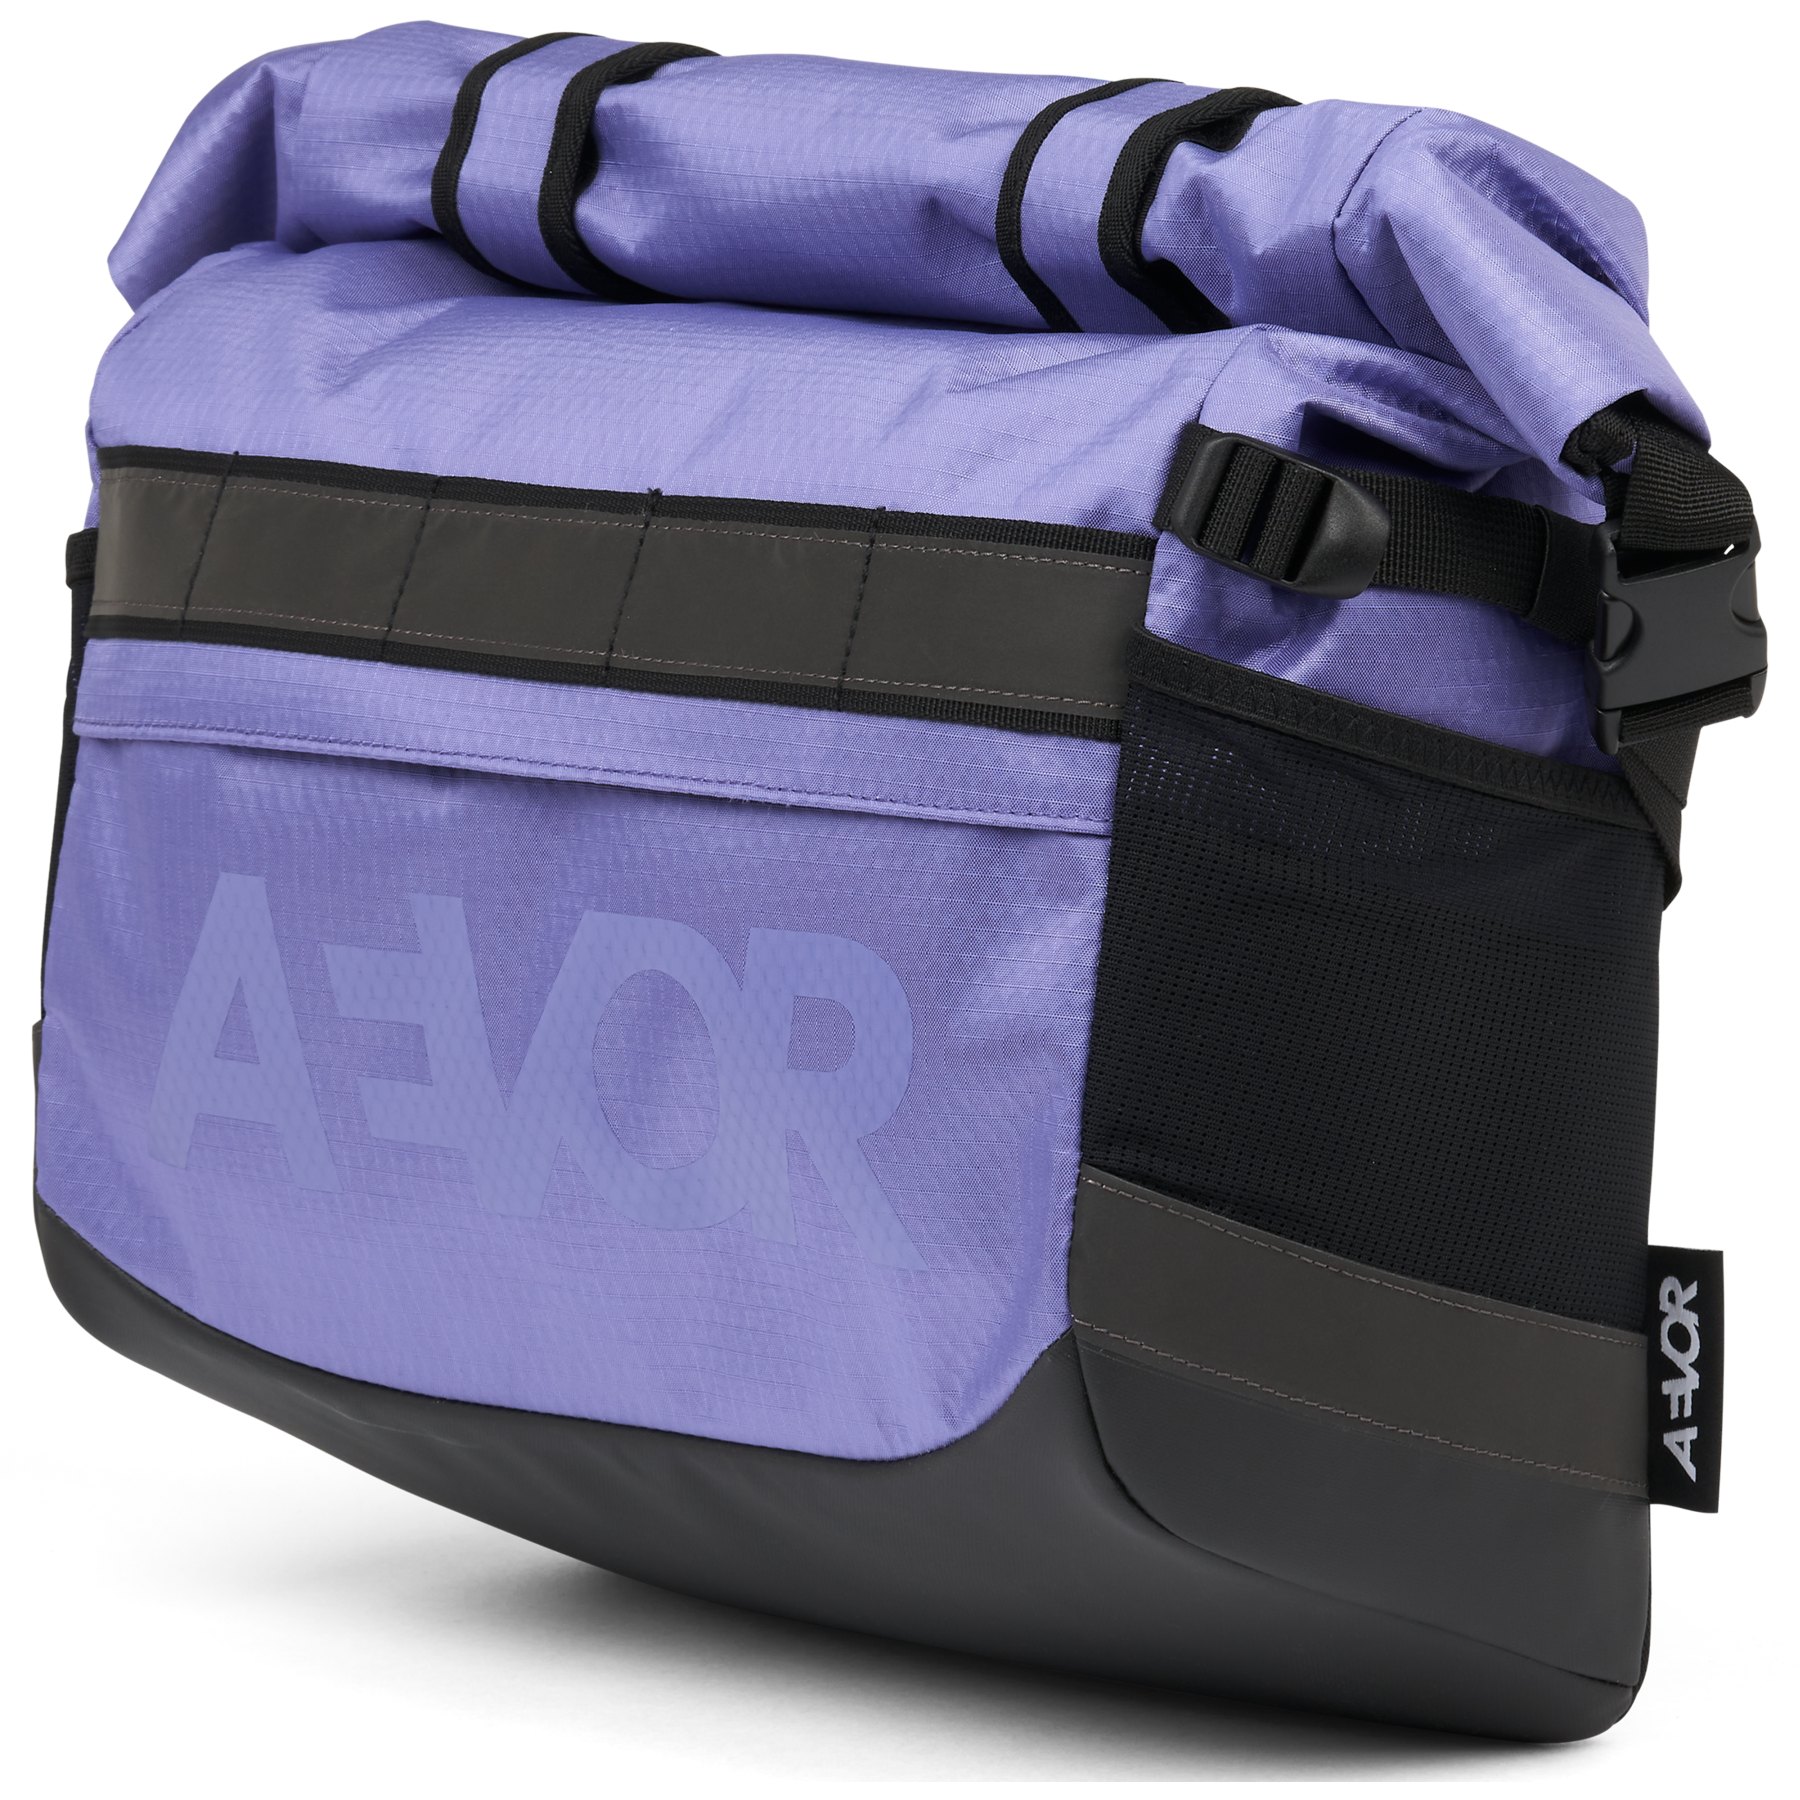 Produktbild von AEVOR Triple Bike Bag Fahrradtasche - Proof Purple